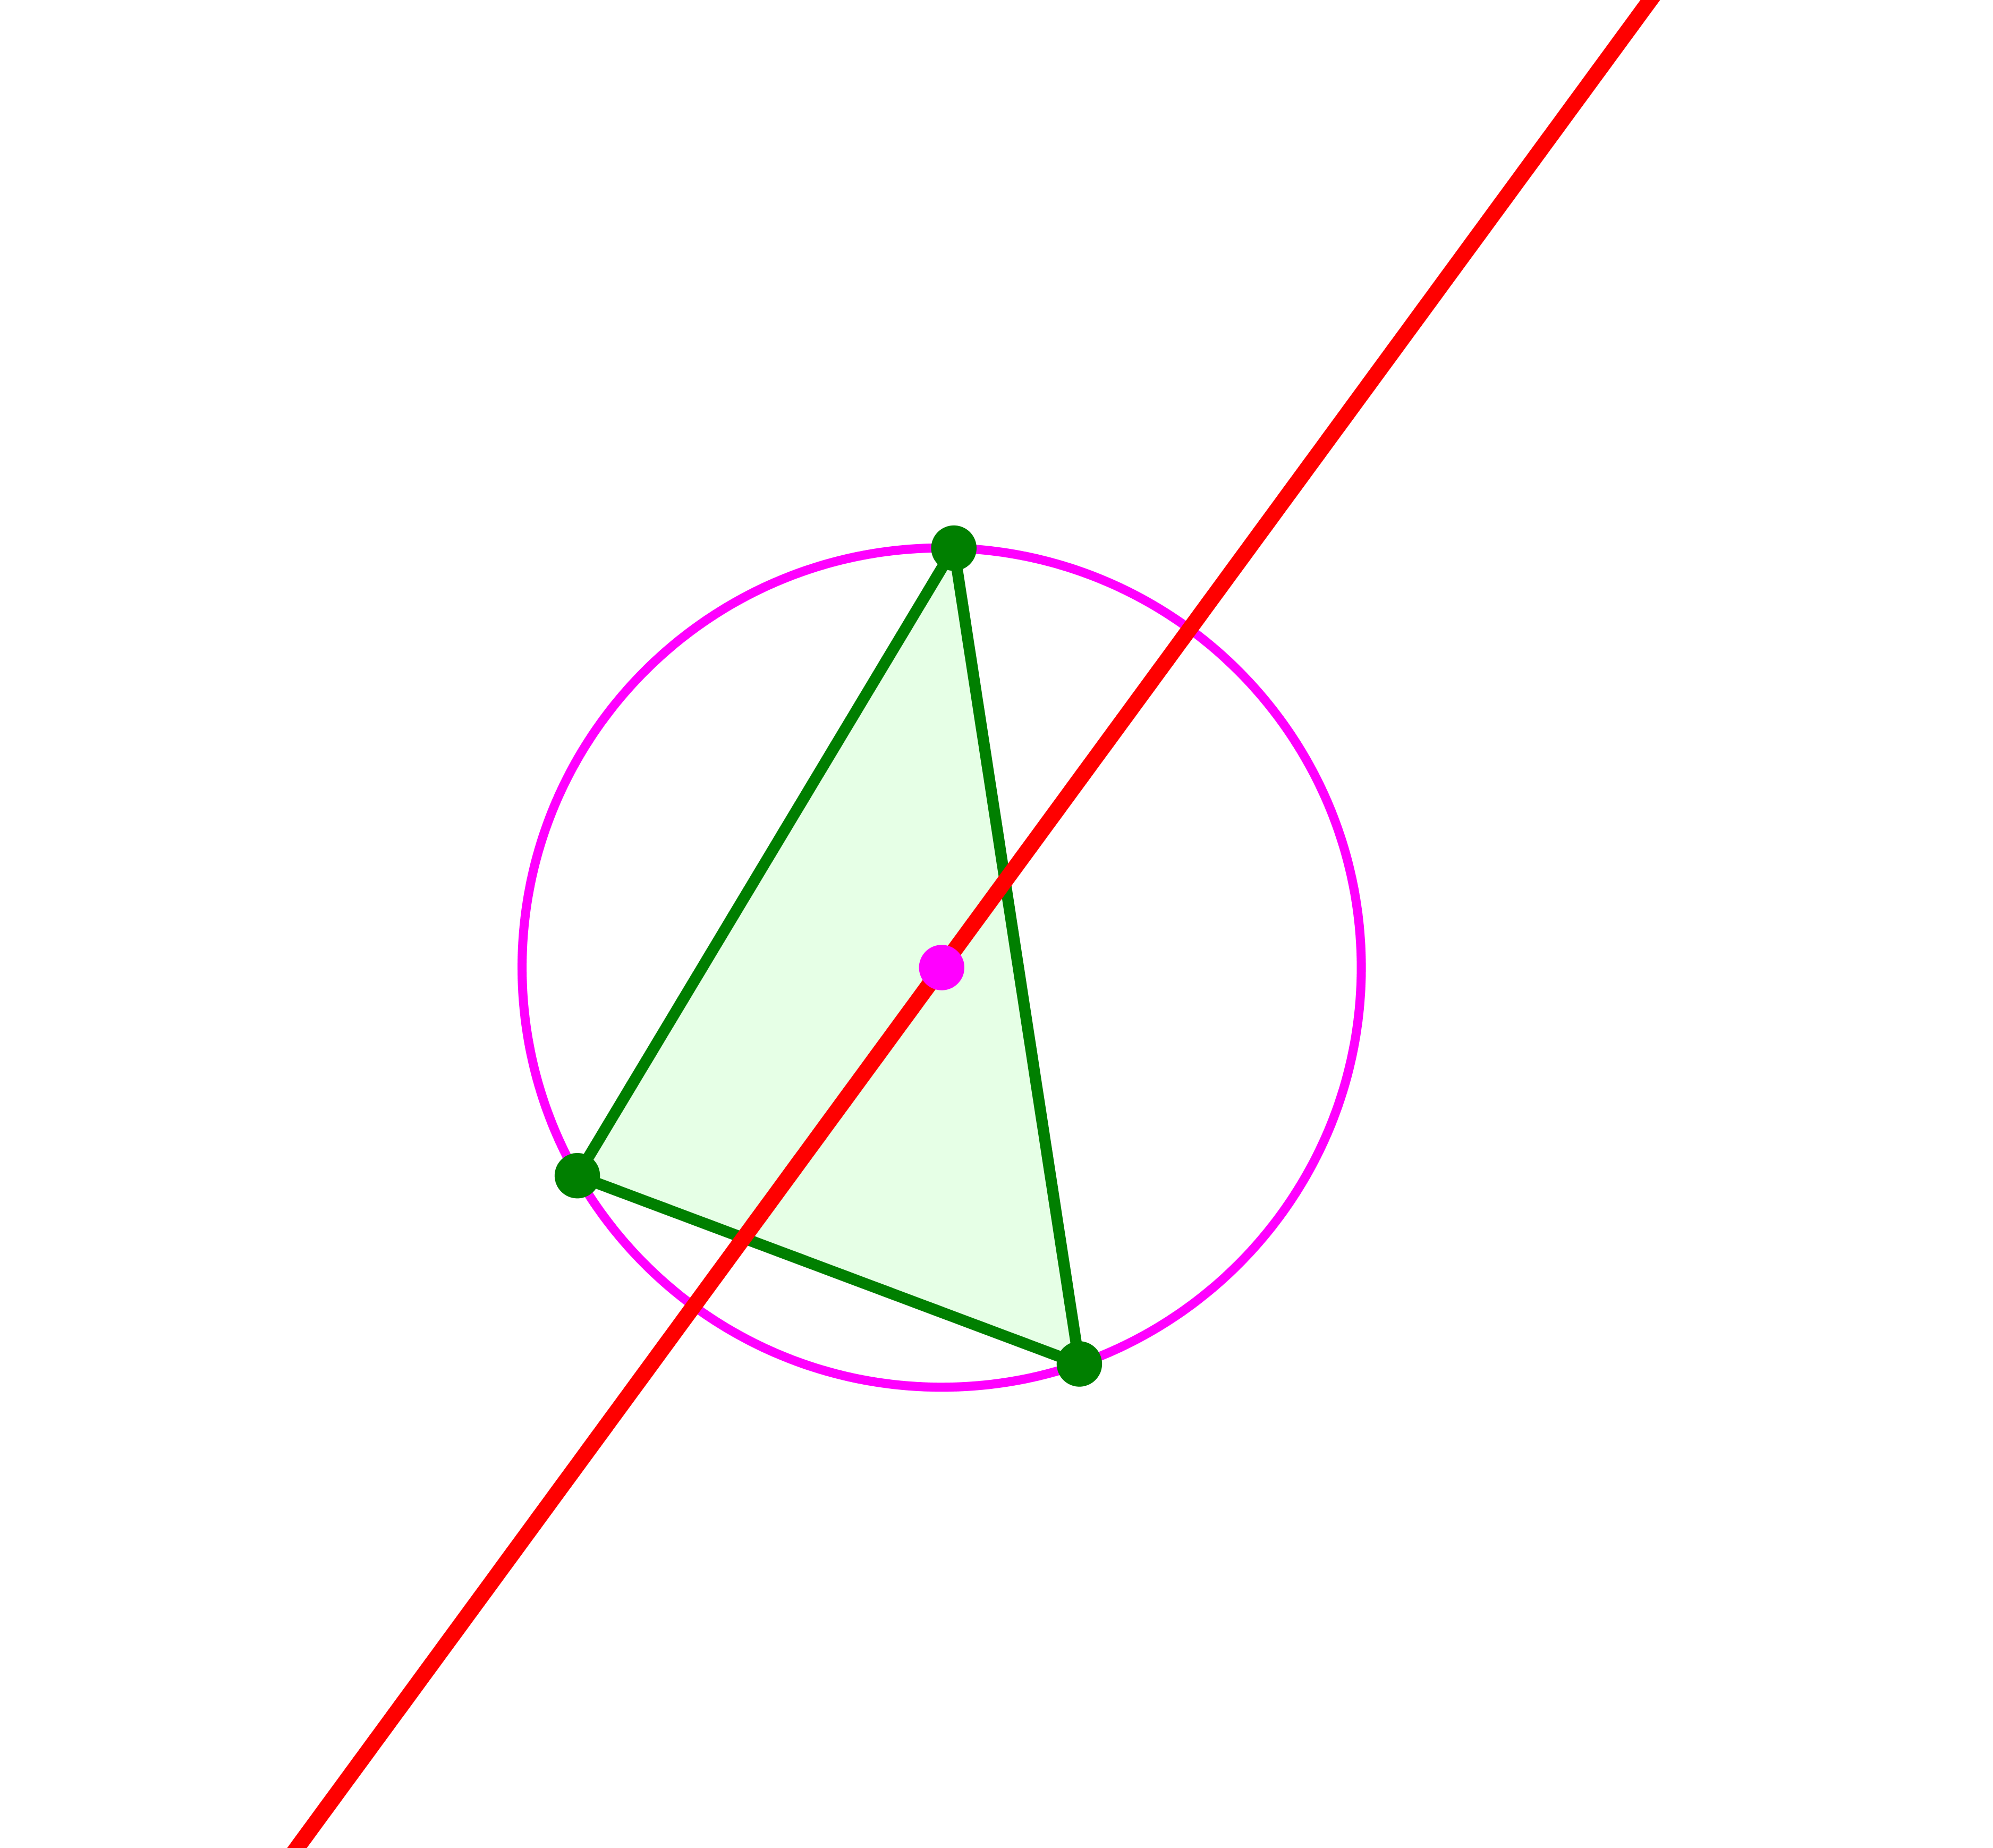 Ein Bild, das Laser enthält.

Automatisch generierte Beschreibung